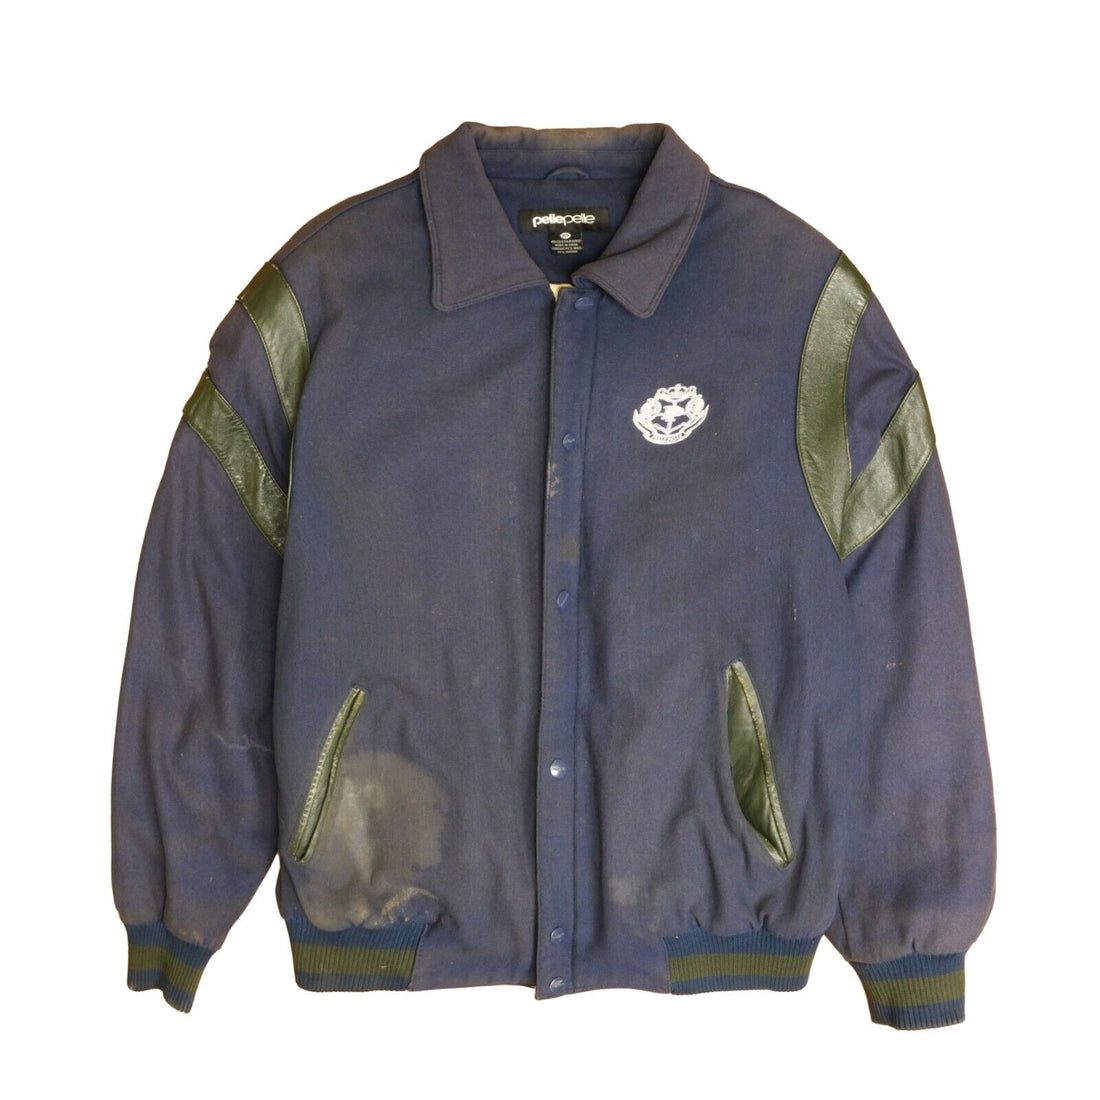 Vintage Pelle Pelle Crest Varsity Jacket Size XL Blue